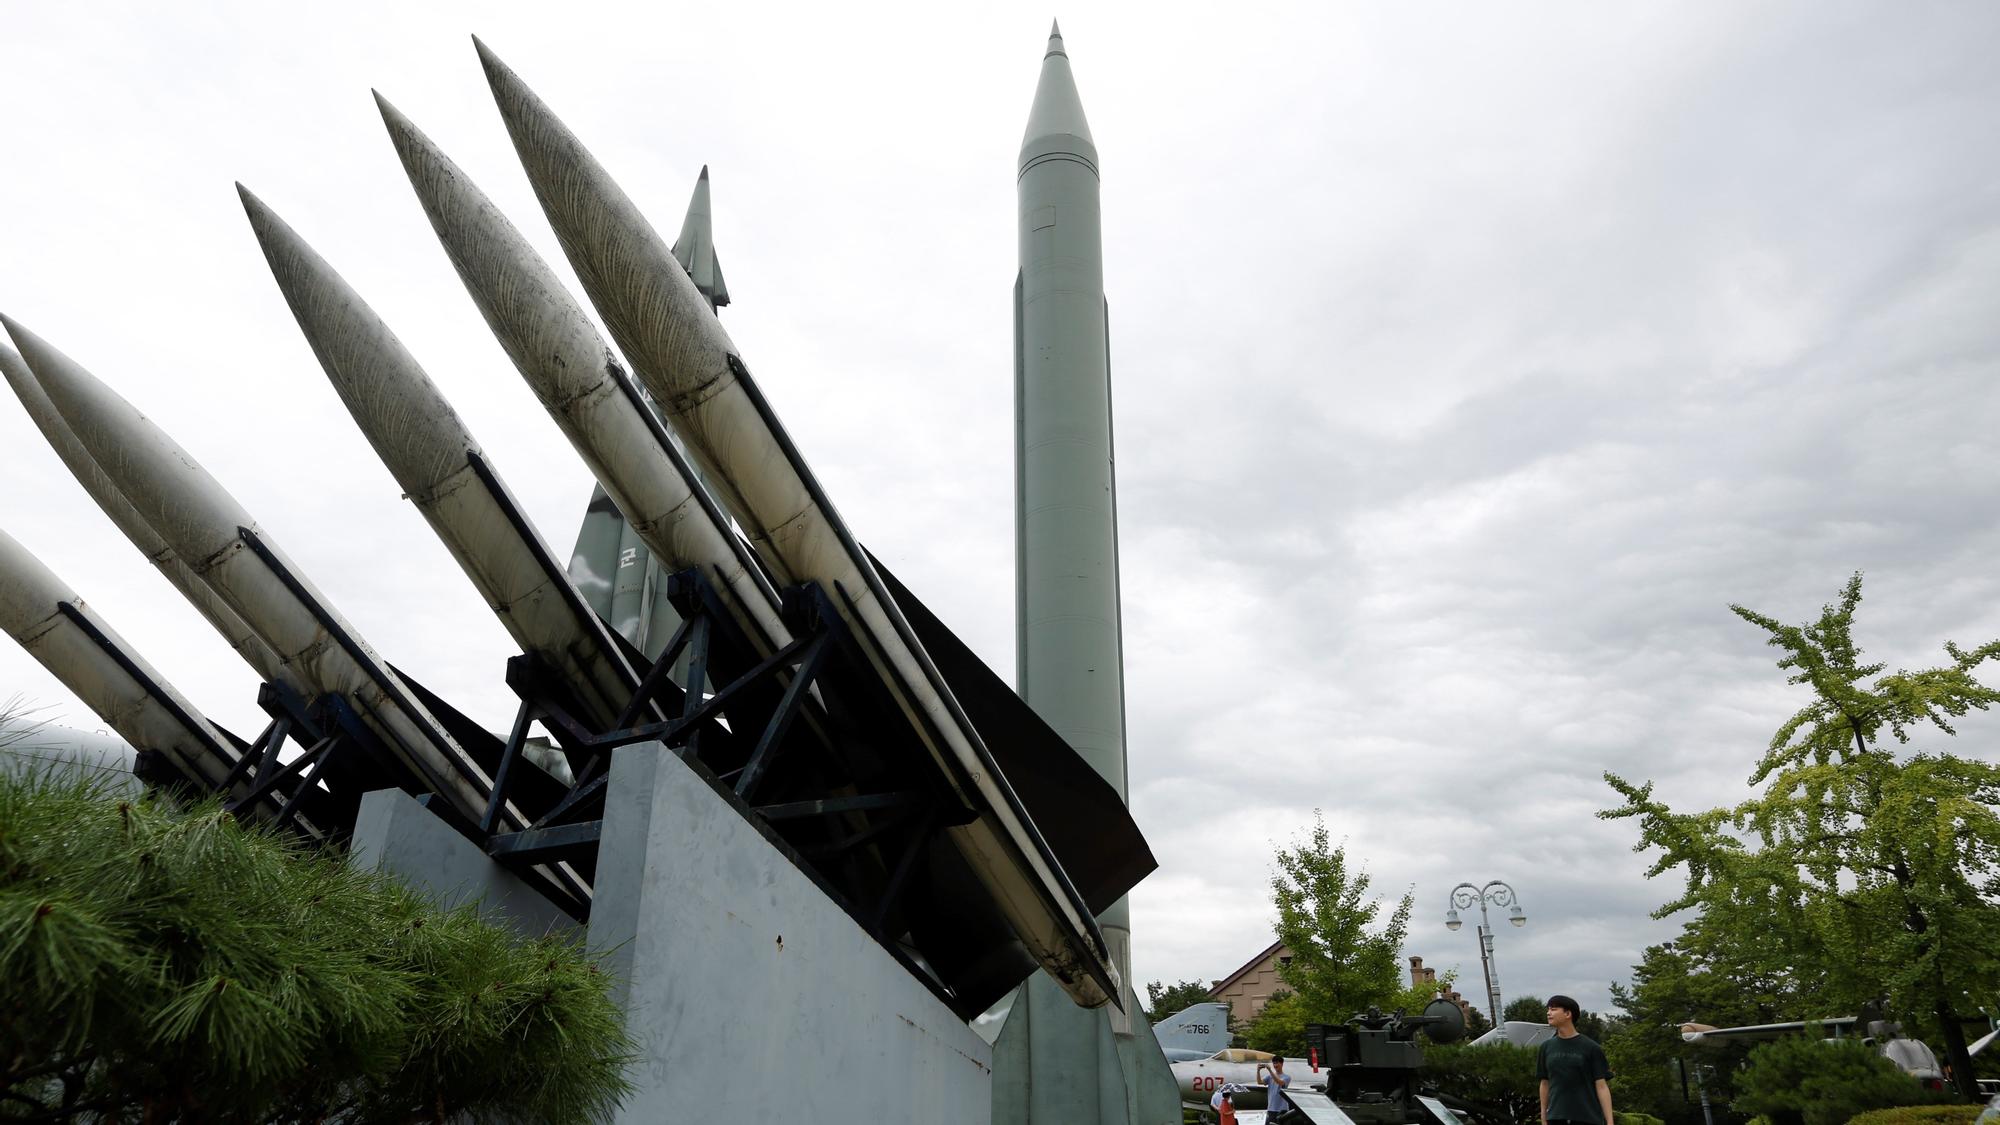 Un surcoreano contempla un misil balístico táctico Scud-B norcoreano que se expone en el Museo Conmemorativo de la Guerra de Corea, en Seúl.